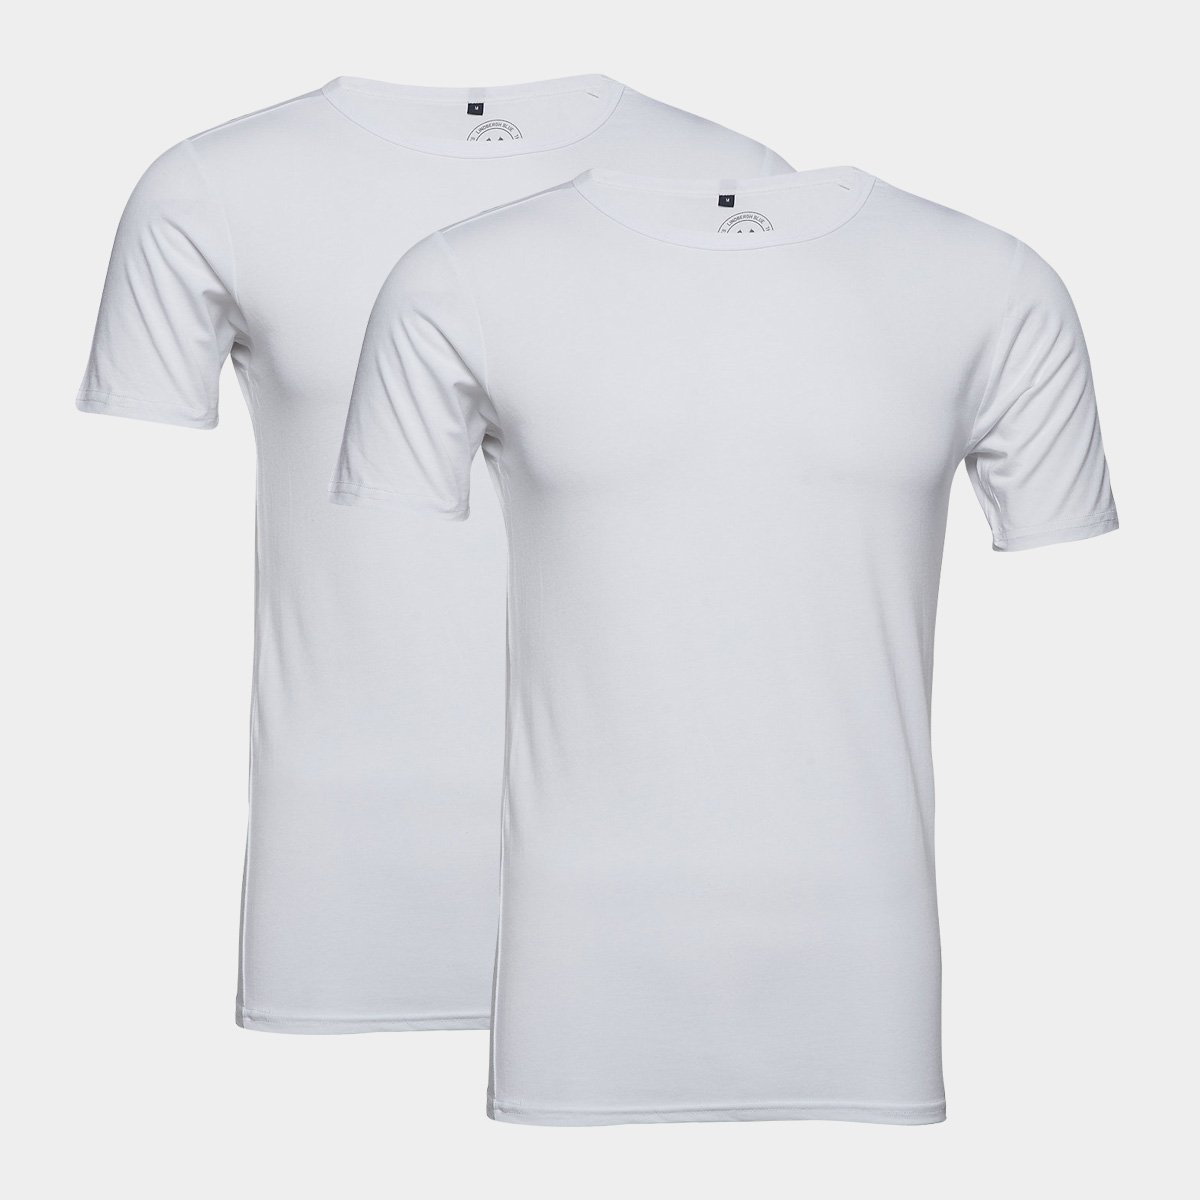 Se Lindbergh Acces 2pak T-shirt i hvid til herre hos Bambustøj.dk